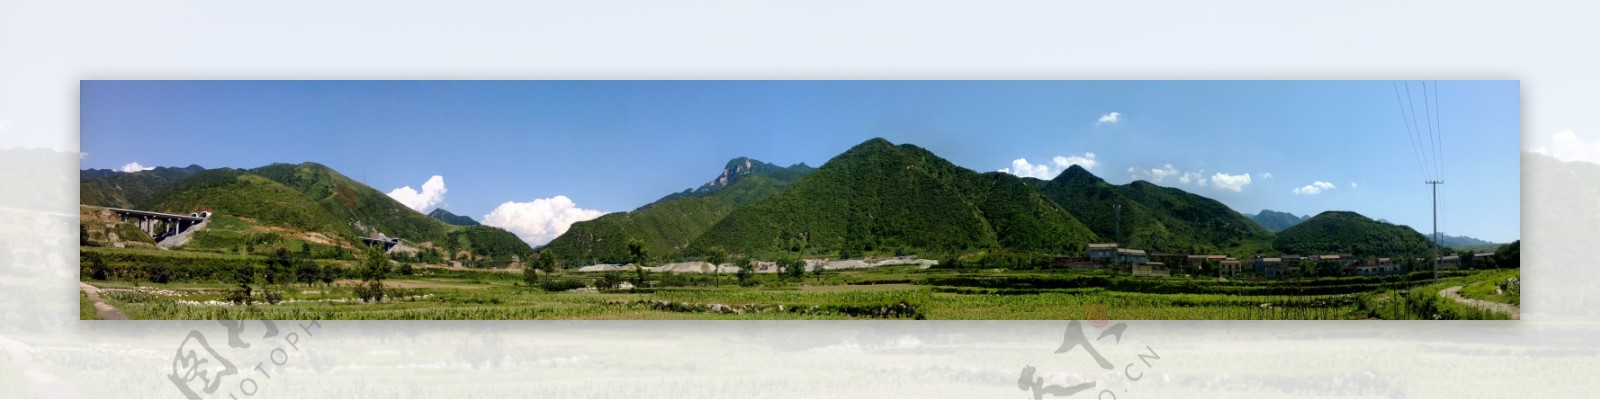 秦岭山图片